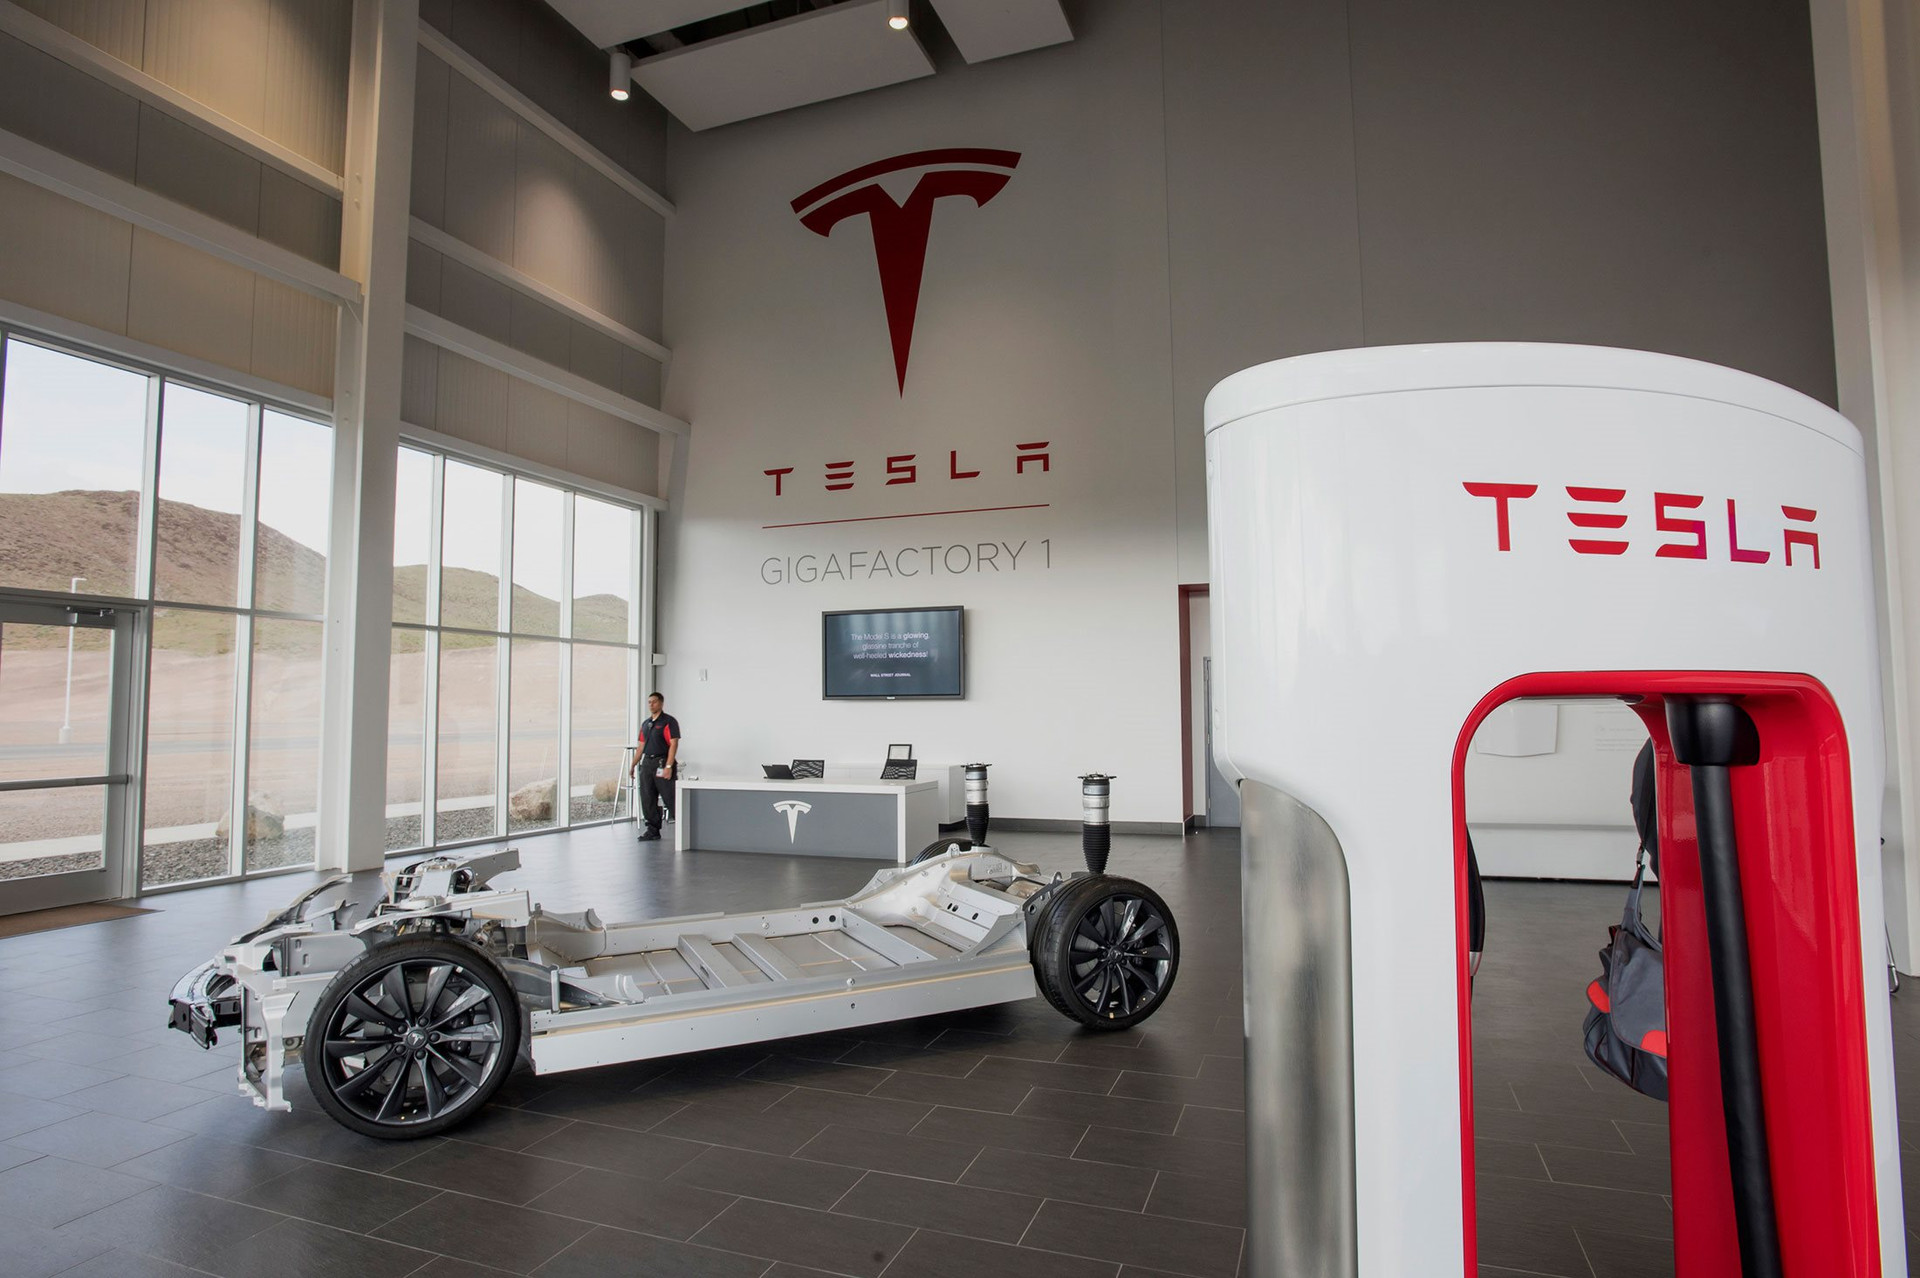 Bí mật xấu xí của Tesla: Làm xe điện nhưng xả hàng chục triệu tấn CO2, bị điều tra vì ngó lơ yếu tố khí thải - Ảnh 2.